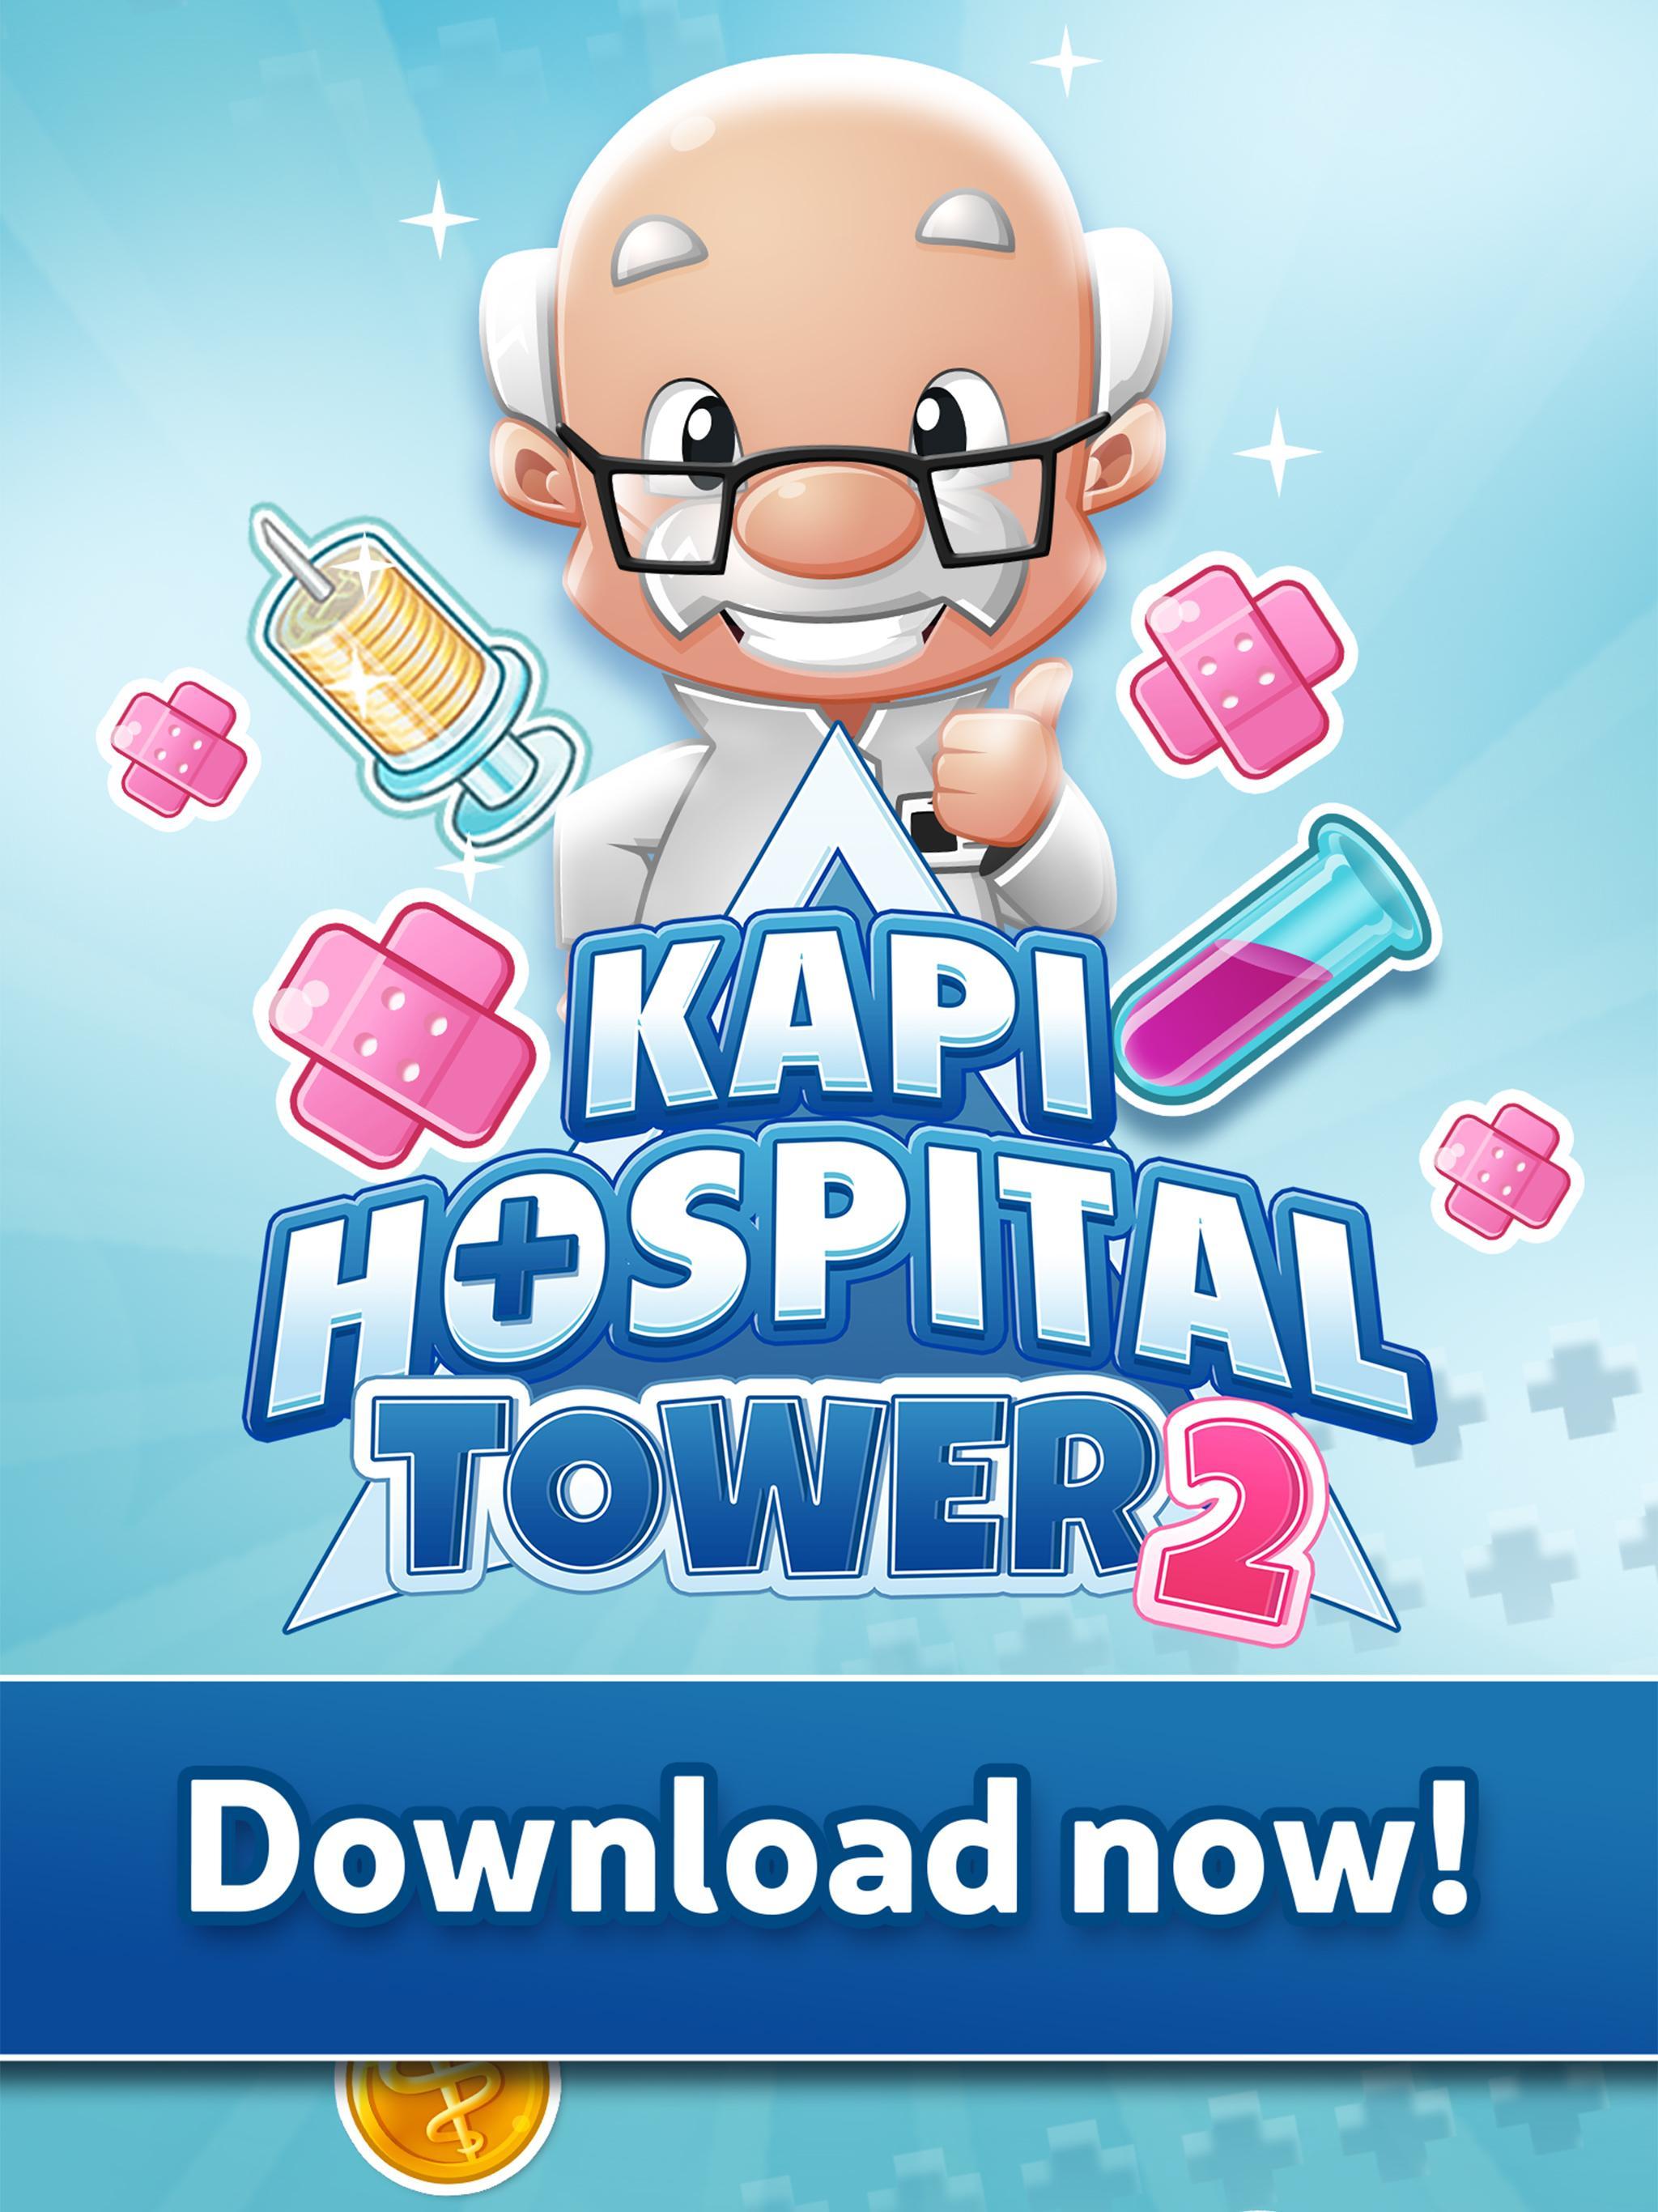 Kapi Hospital Tower 2のキャプチャ